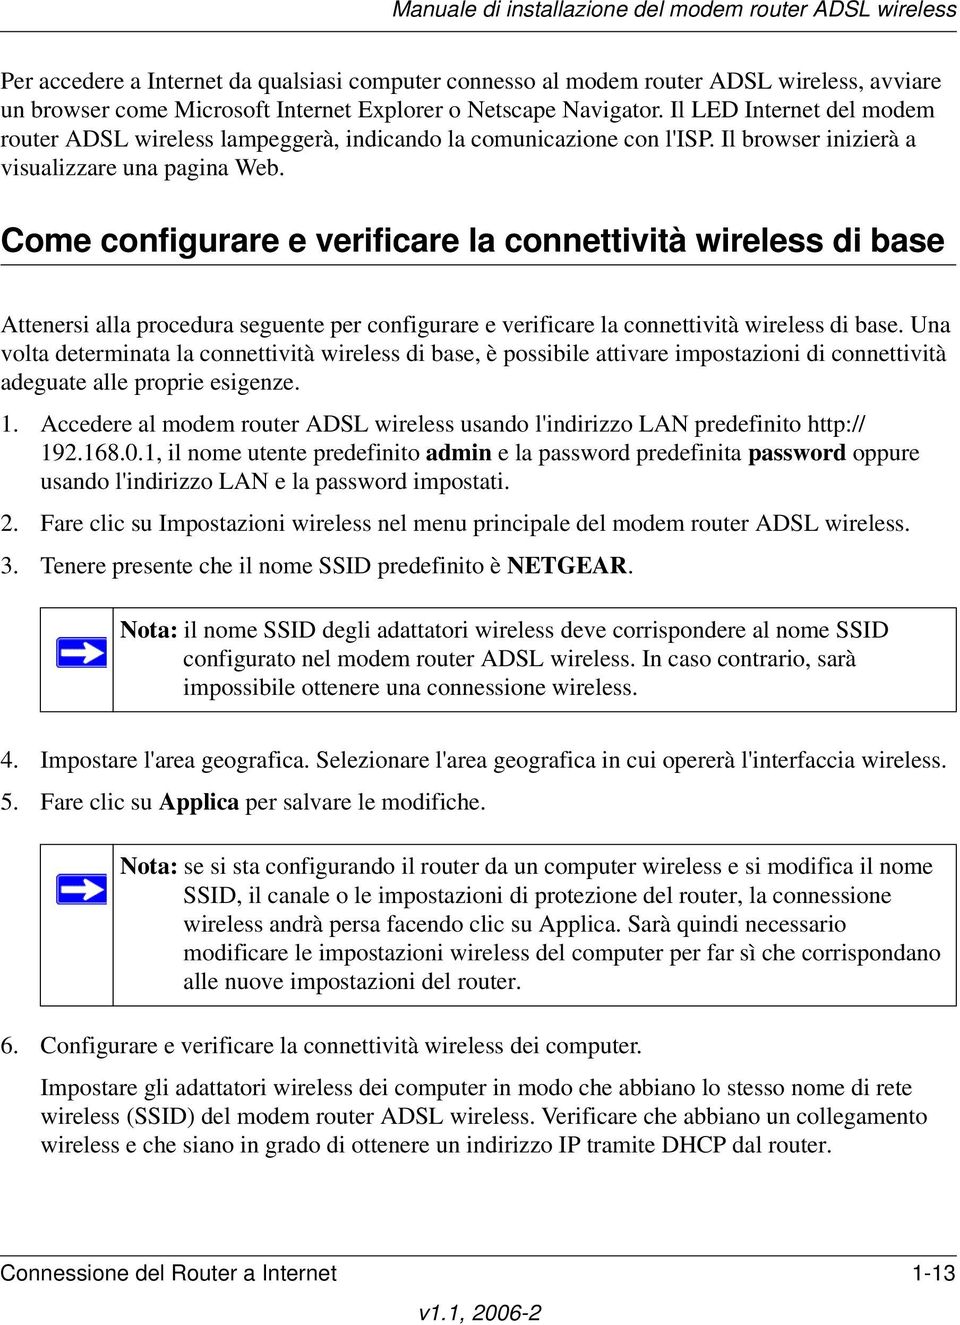 Come configurare e verificare la connettività wireless di base Attenersi alla procedura seguente per configurare e verificare la connettività wireless di base.